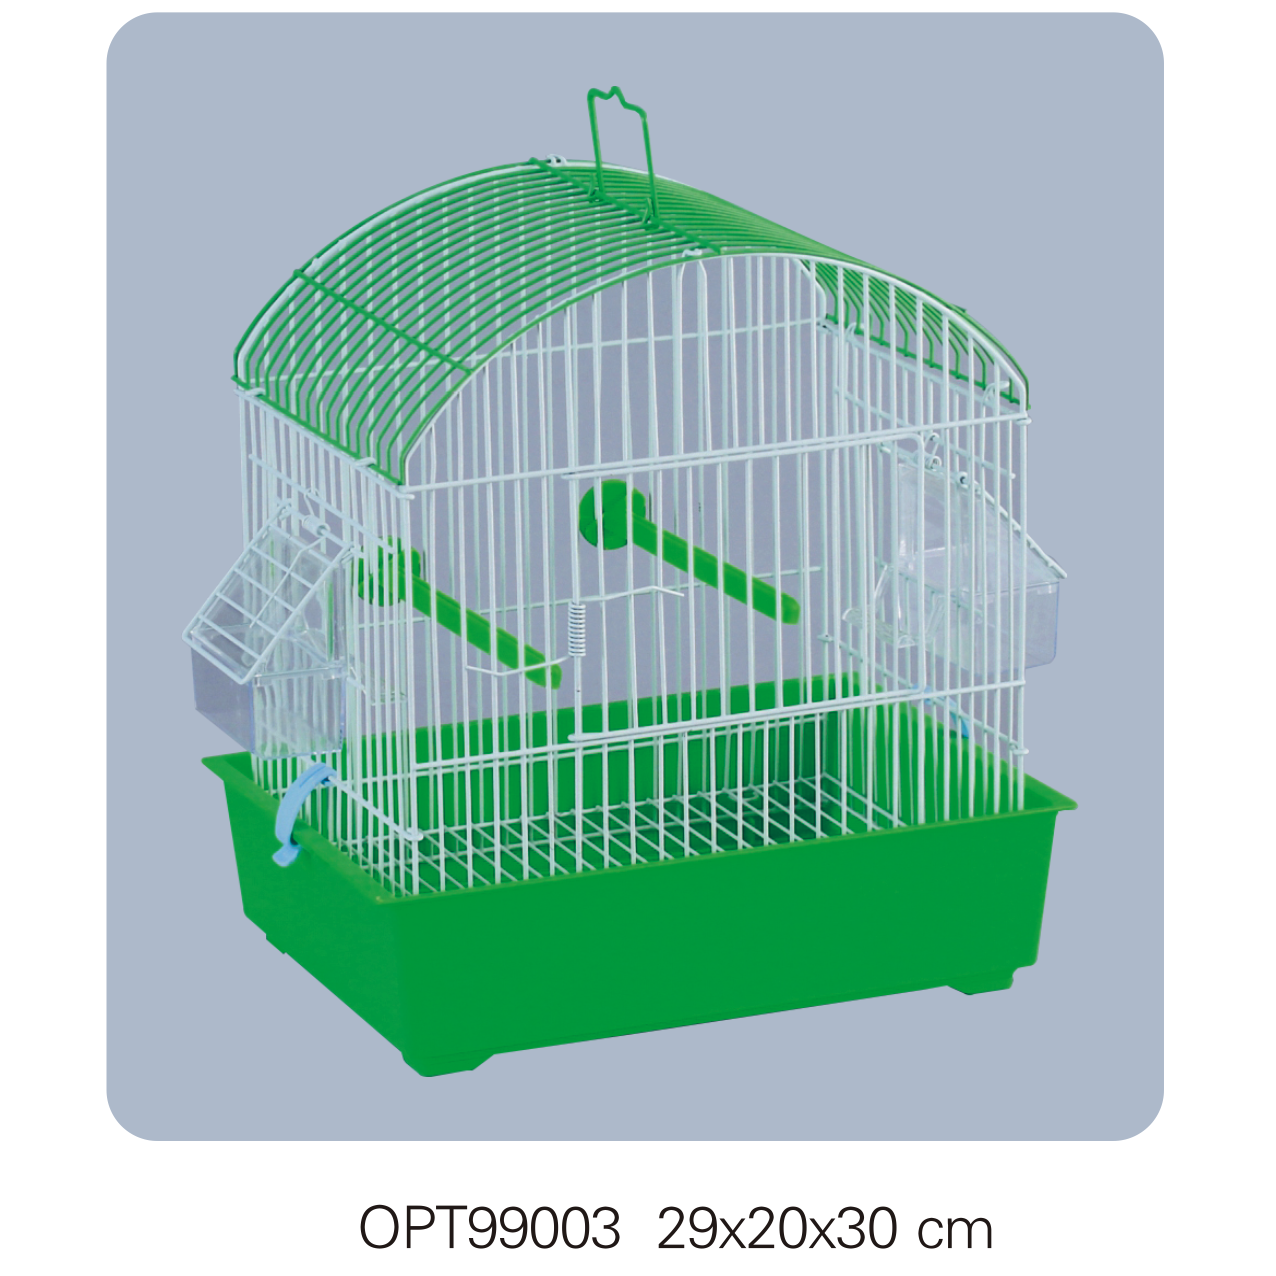 OPT99003 29x20x30cm Bird cages